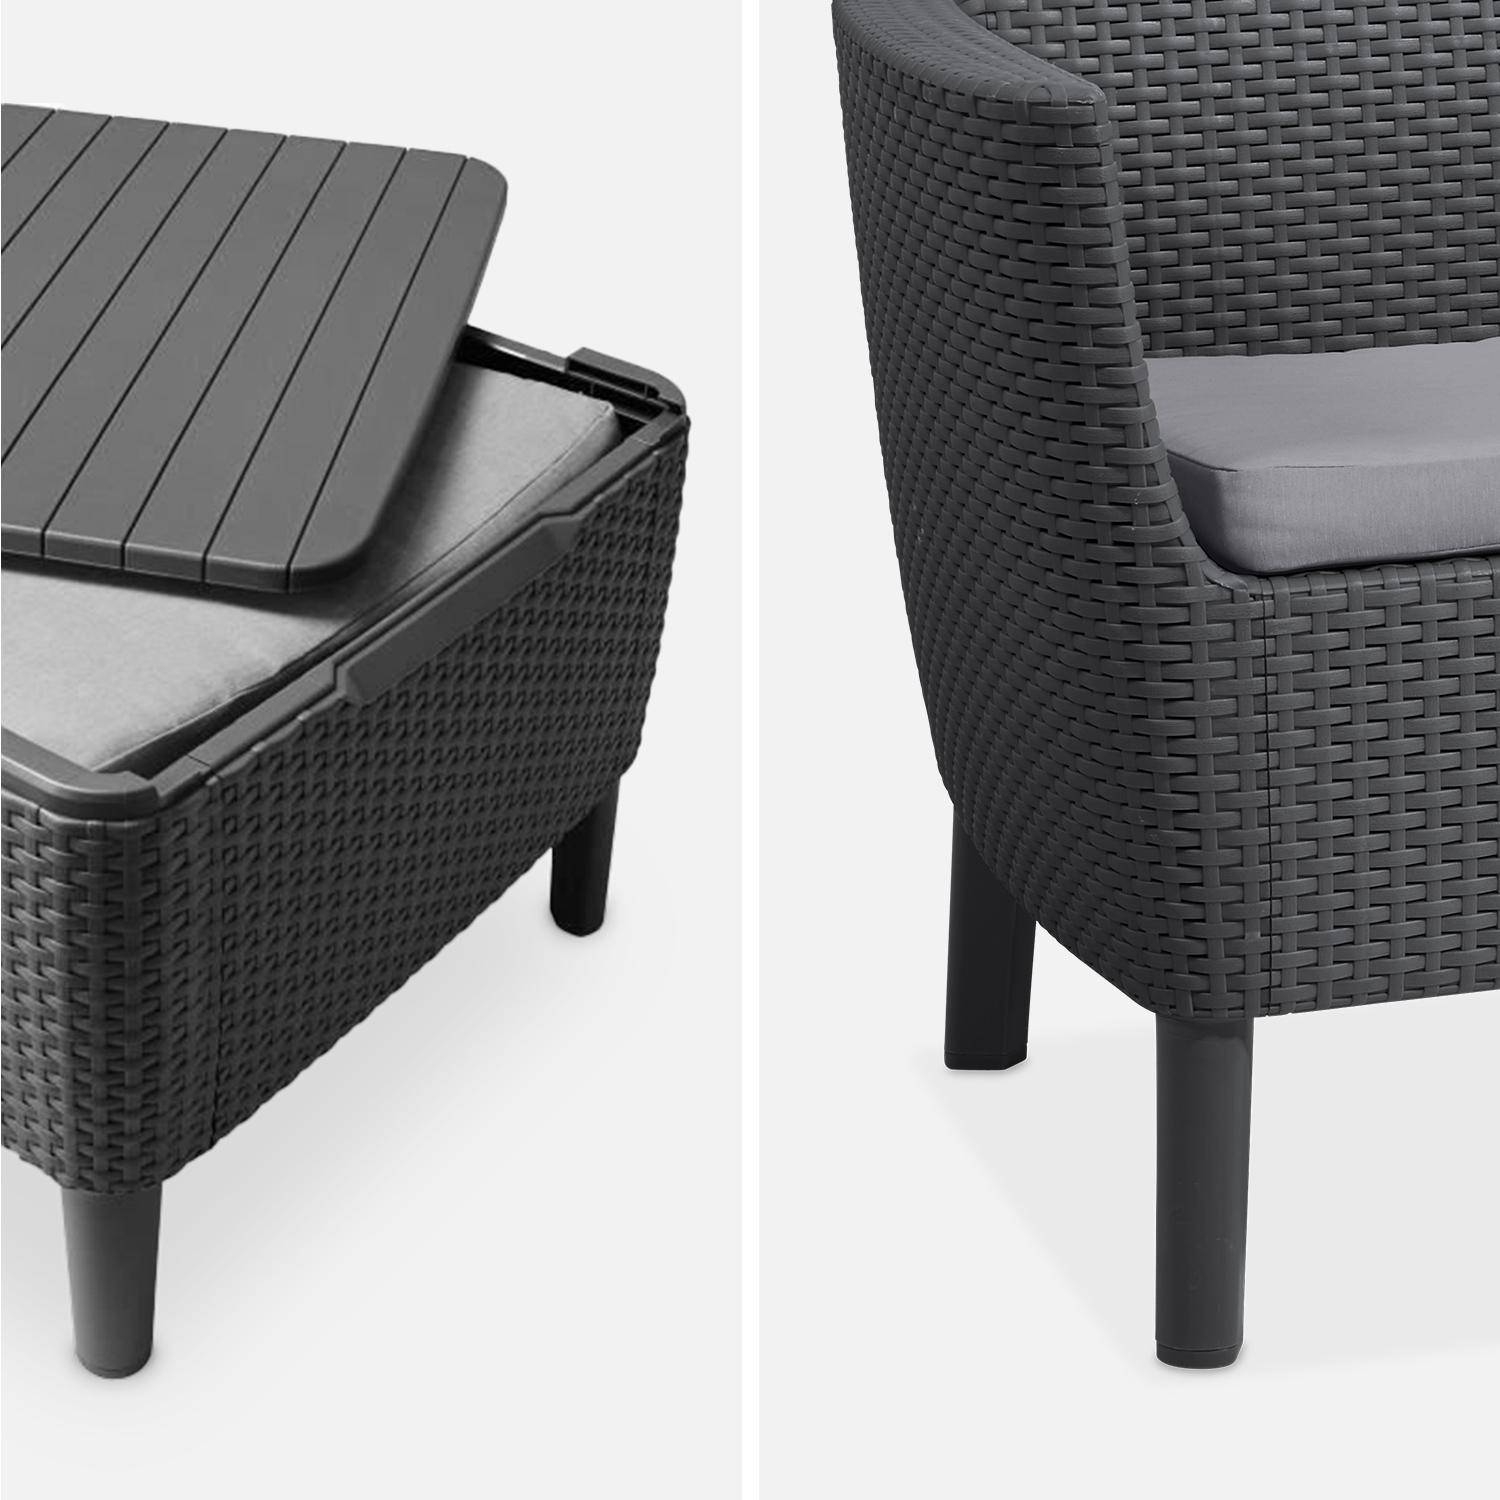  Conjunto de muebles de jardín de resina plástica inyectada imitando el ratán - Salemo 4 - Grafito, cojines grises - 4 asientos, un sofá, dos sillones, una mesa de centro Photo4